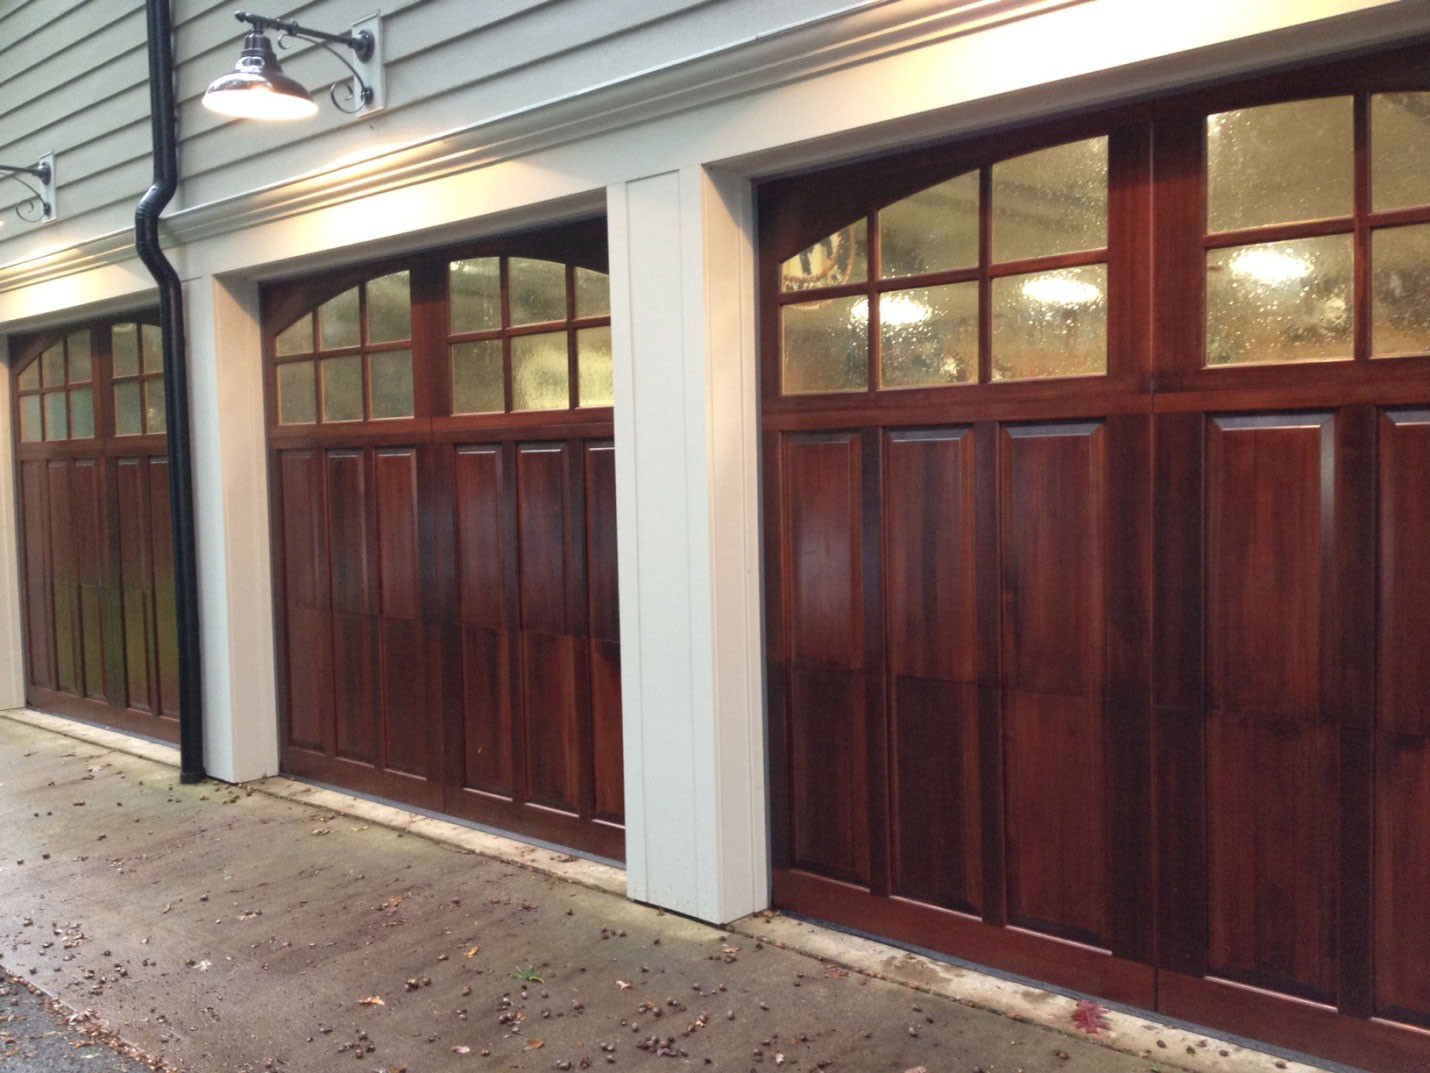 Custom Size Garage Doors
 Standard Garage Doors Sizes for Your Home Sweet Home